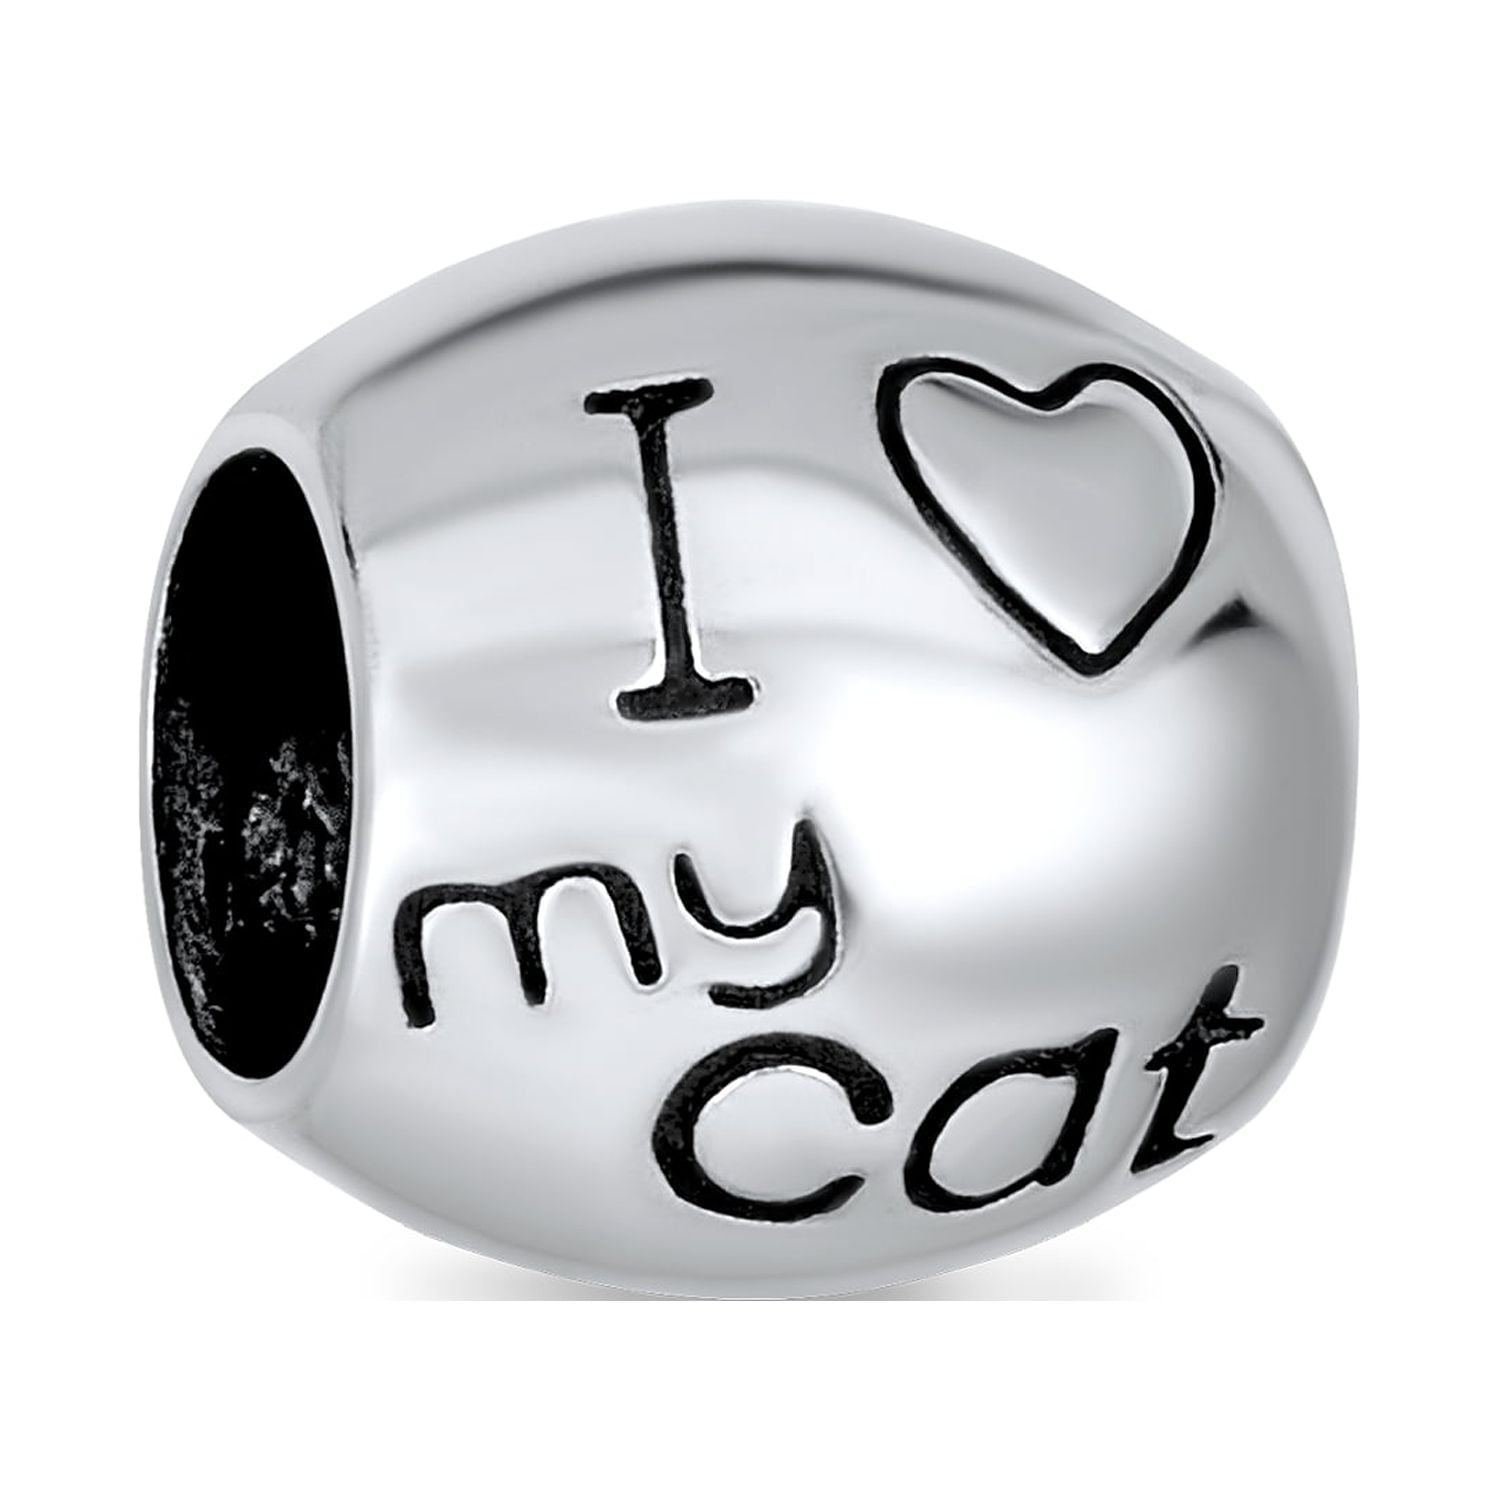 I LOVE CATS, Loaded, Cat Charm Bracelet, Cat Bracelet, Ceramic